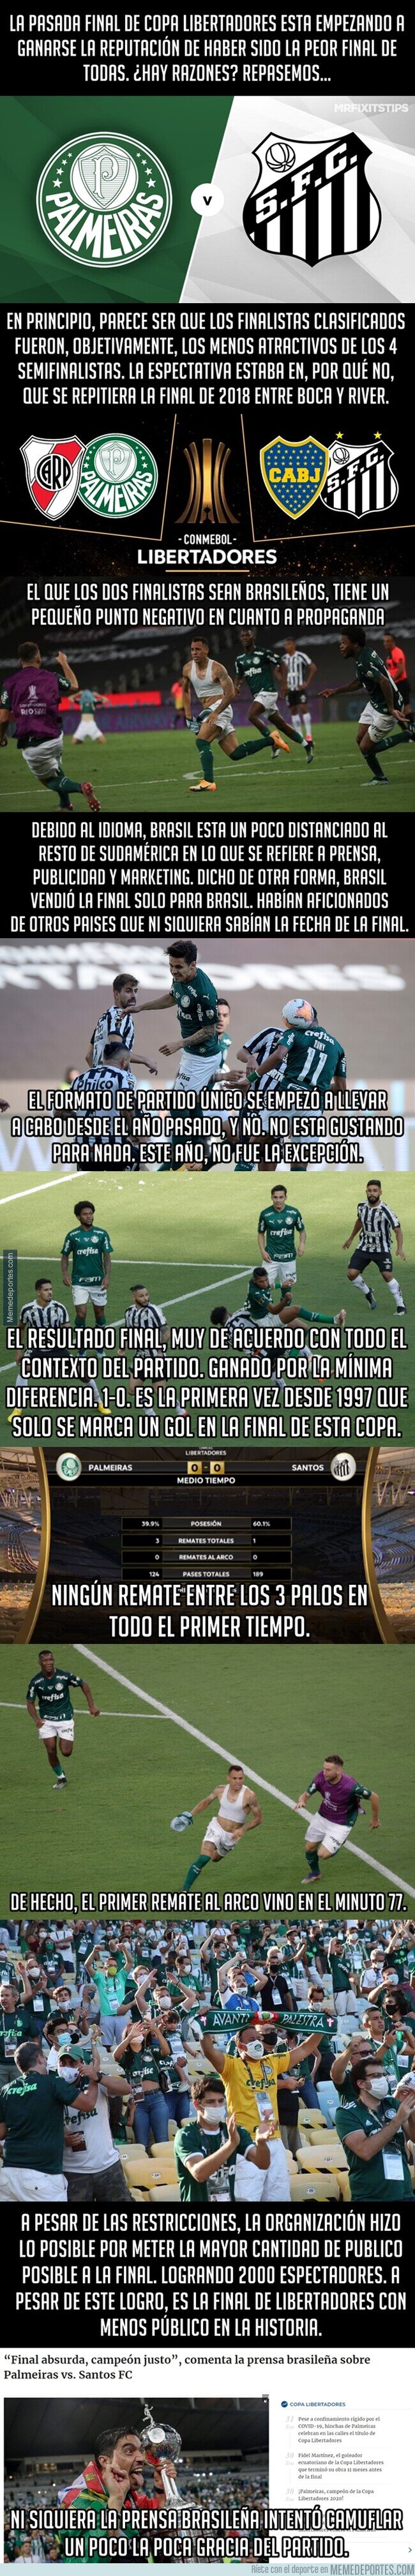 1126780 - ¿Fue esta final de Copa Libertadores la peor de todas?